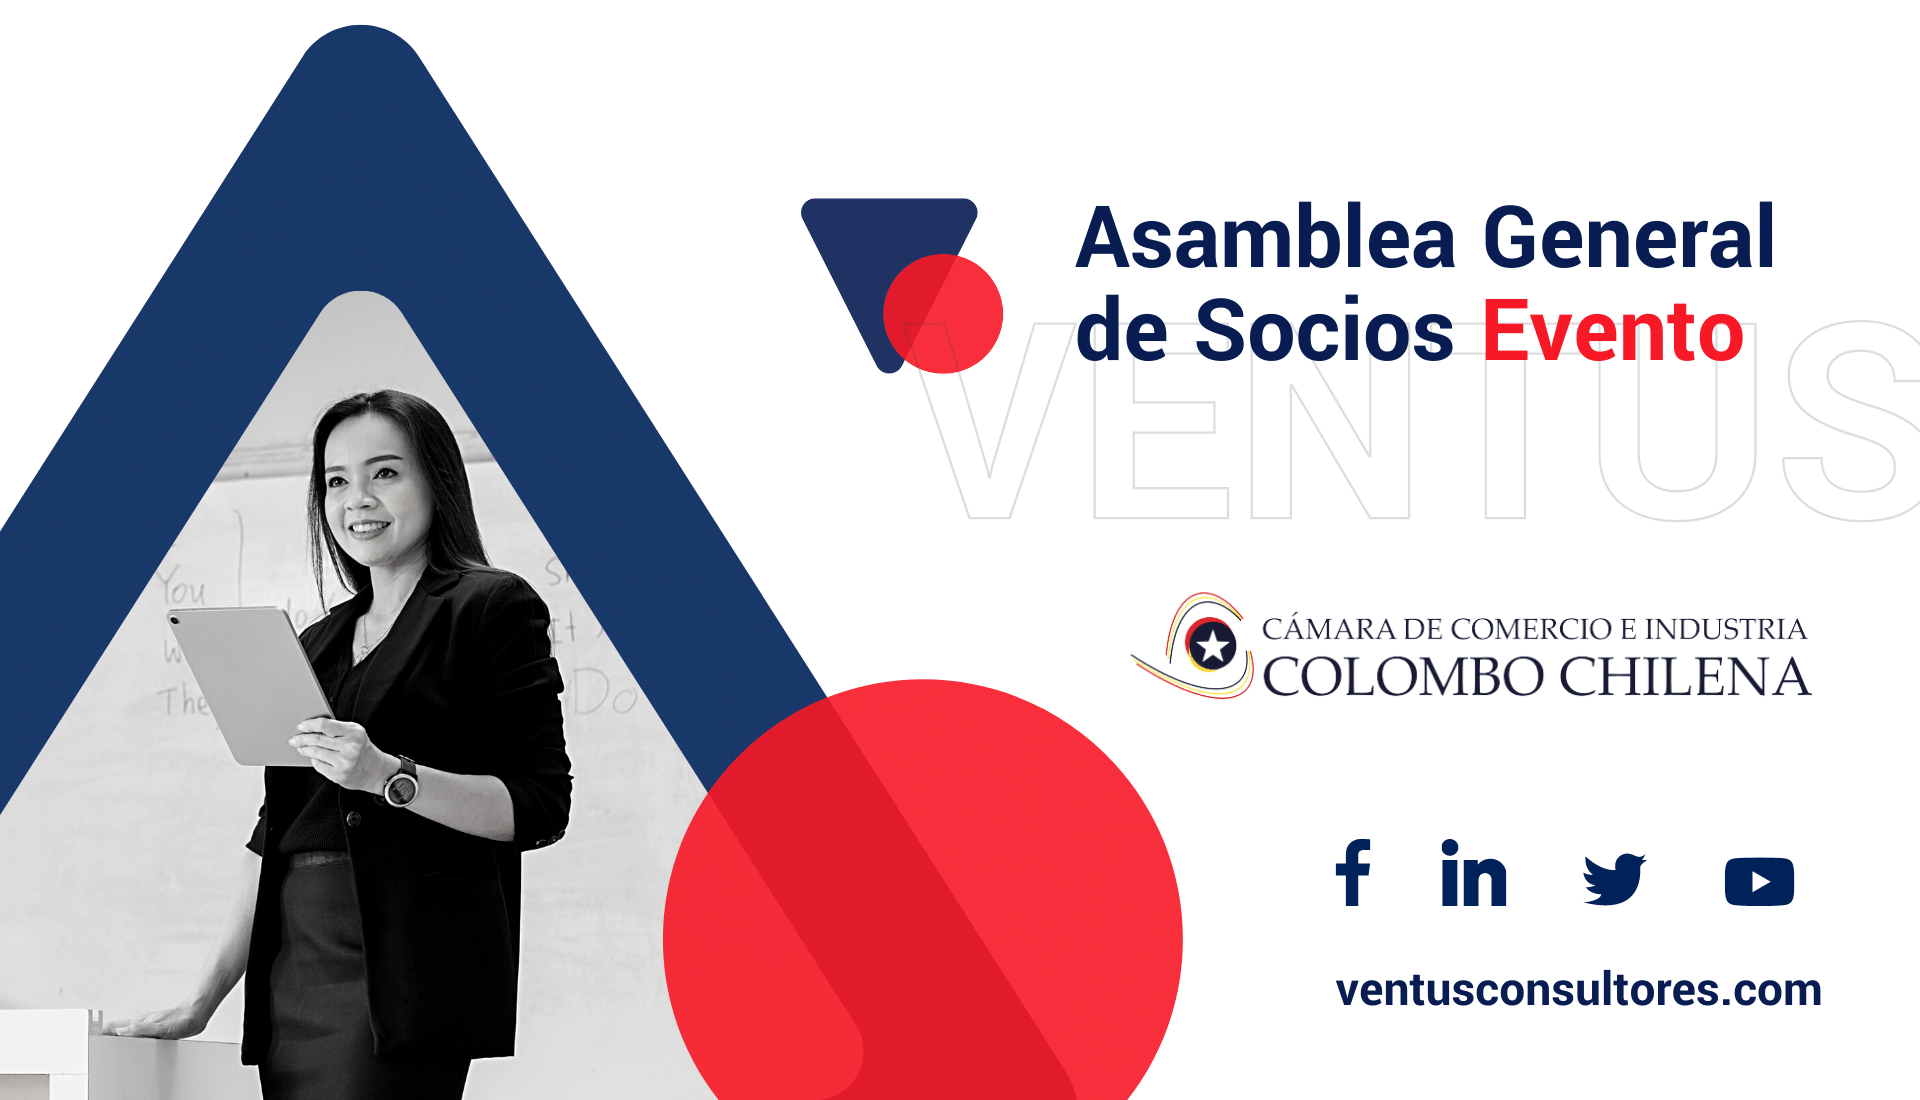 Asamblea-General-de-Socios-Evento-Cámara-Colombo-Chilena